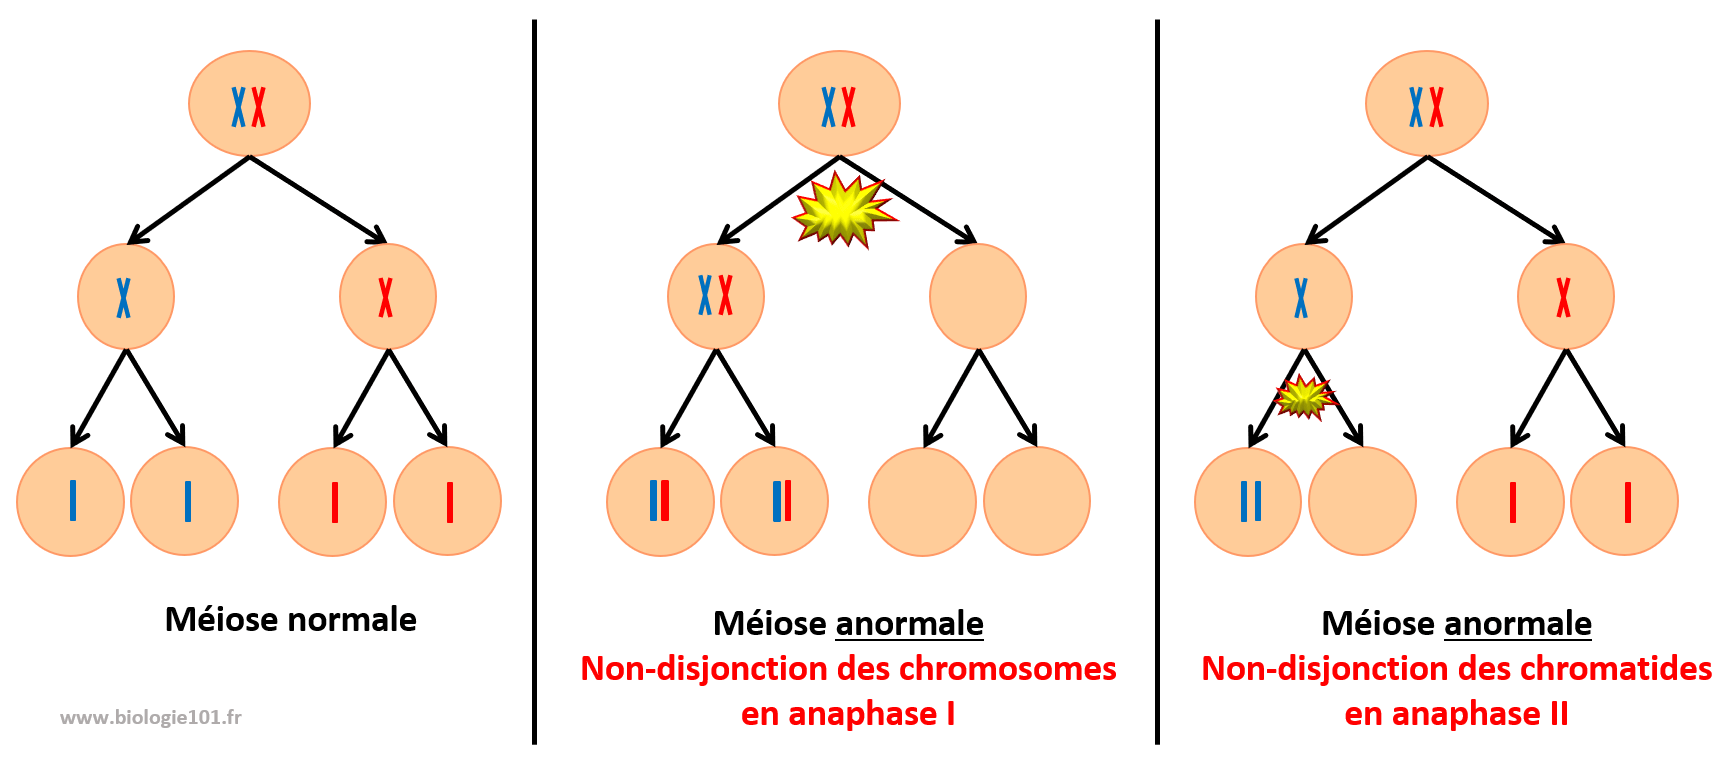 Non-disjonction lors de la méiose en anaphase 1 et 2 entraîne une aneuploïdie.